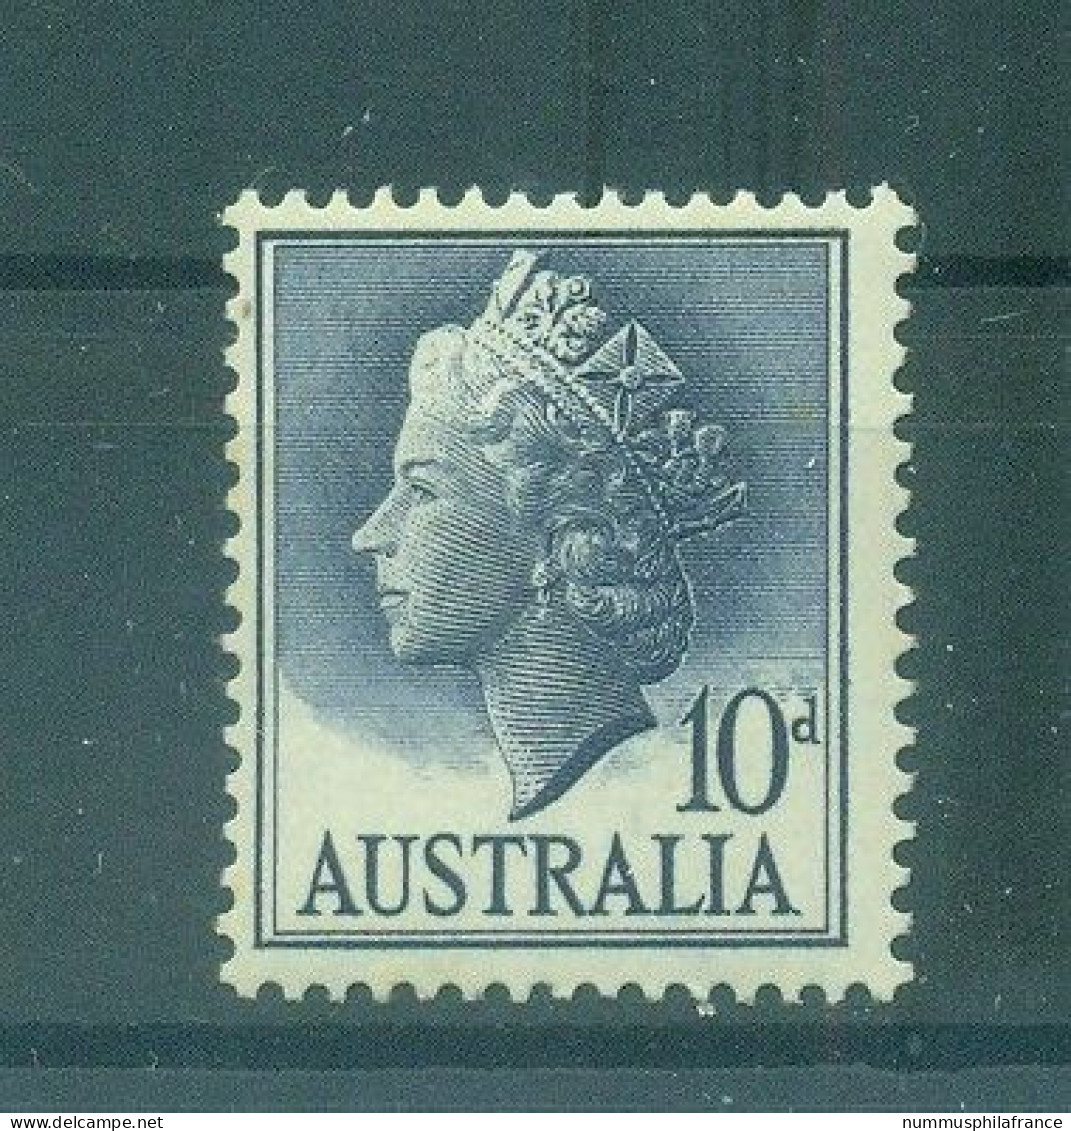 Australie 1957 - Y & T N. 237 - Série Courante (Michel N. 274 A) - Ungebraucht